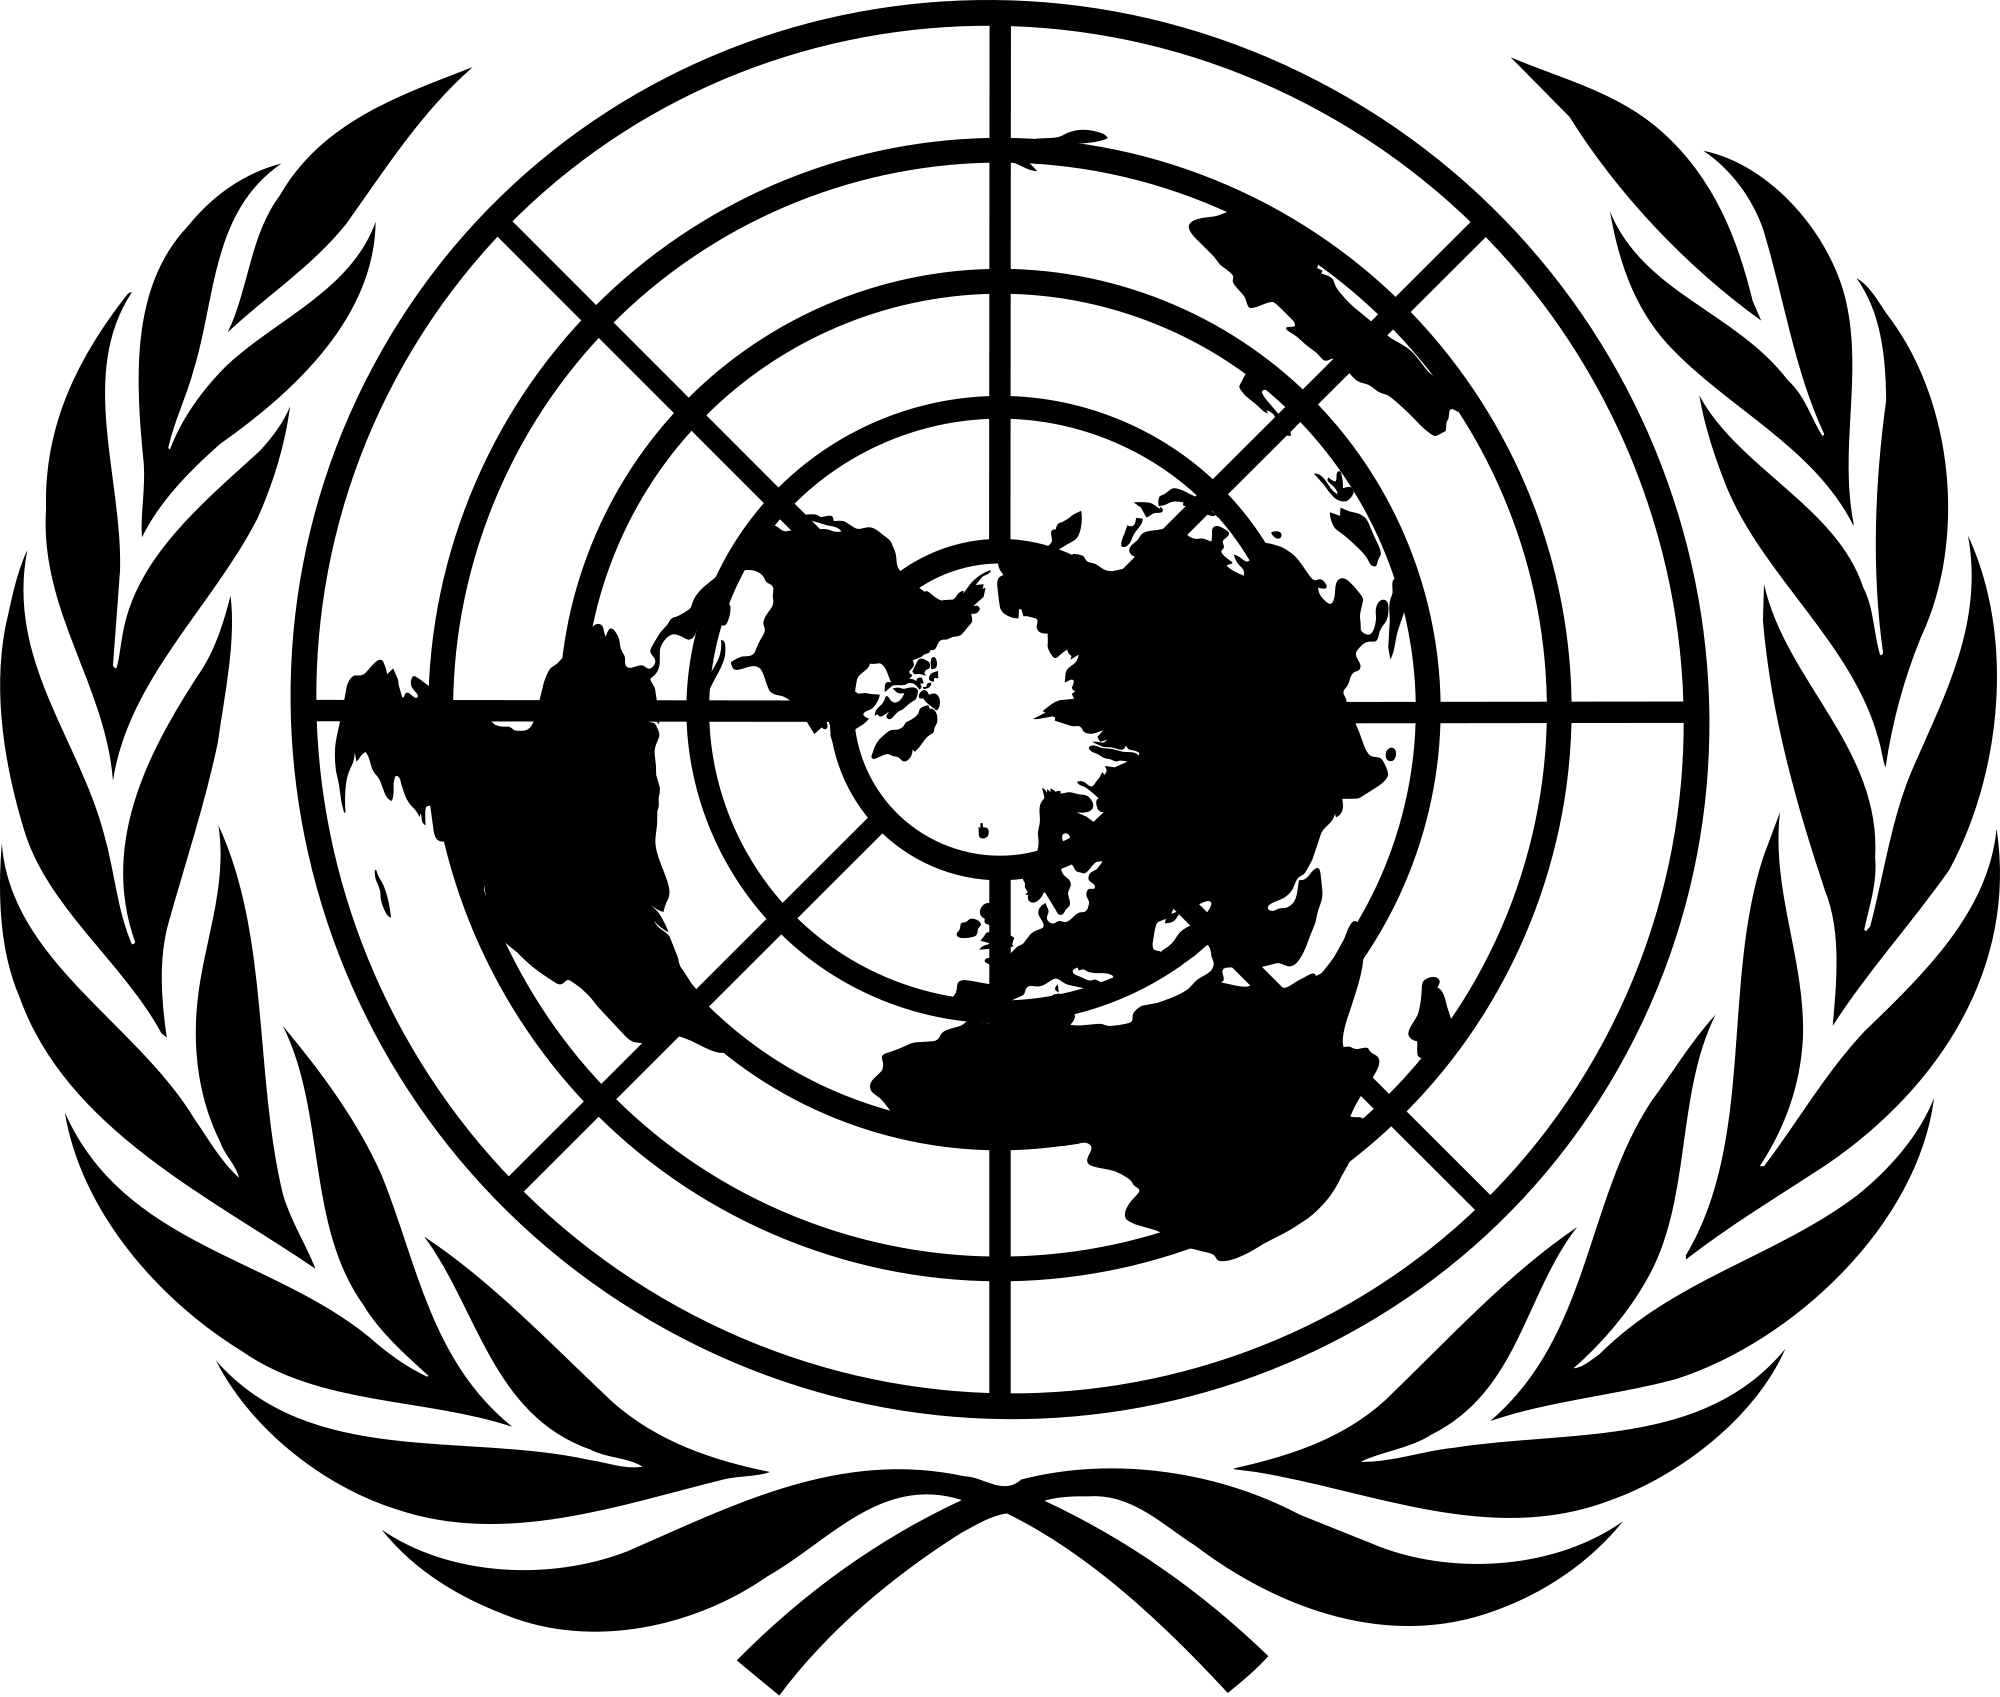 Logotipo das Nações Unidas